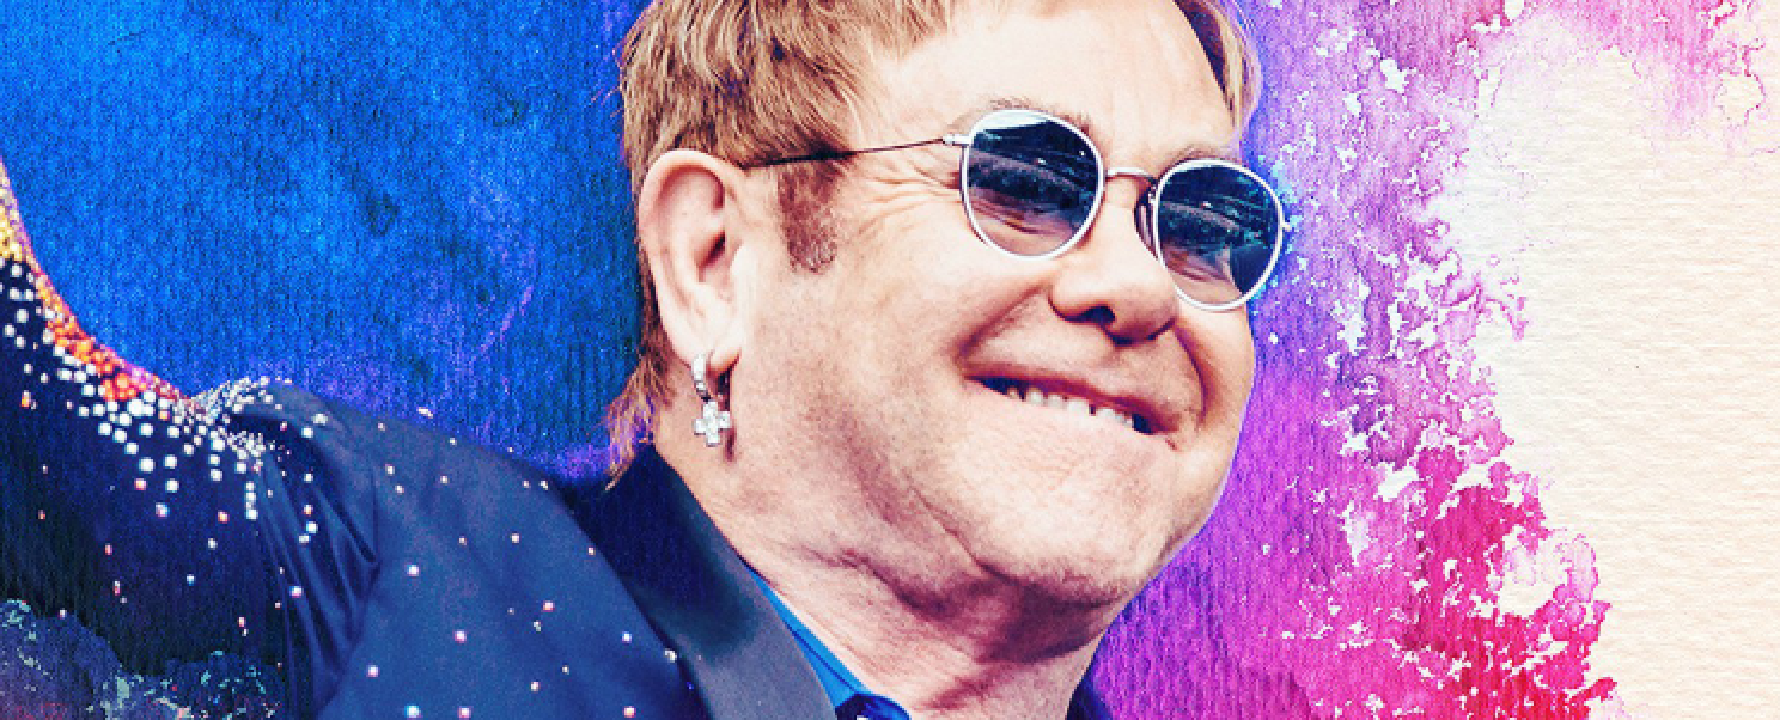 Fotografía promocional de Elton John